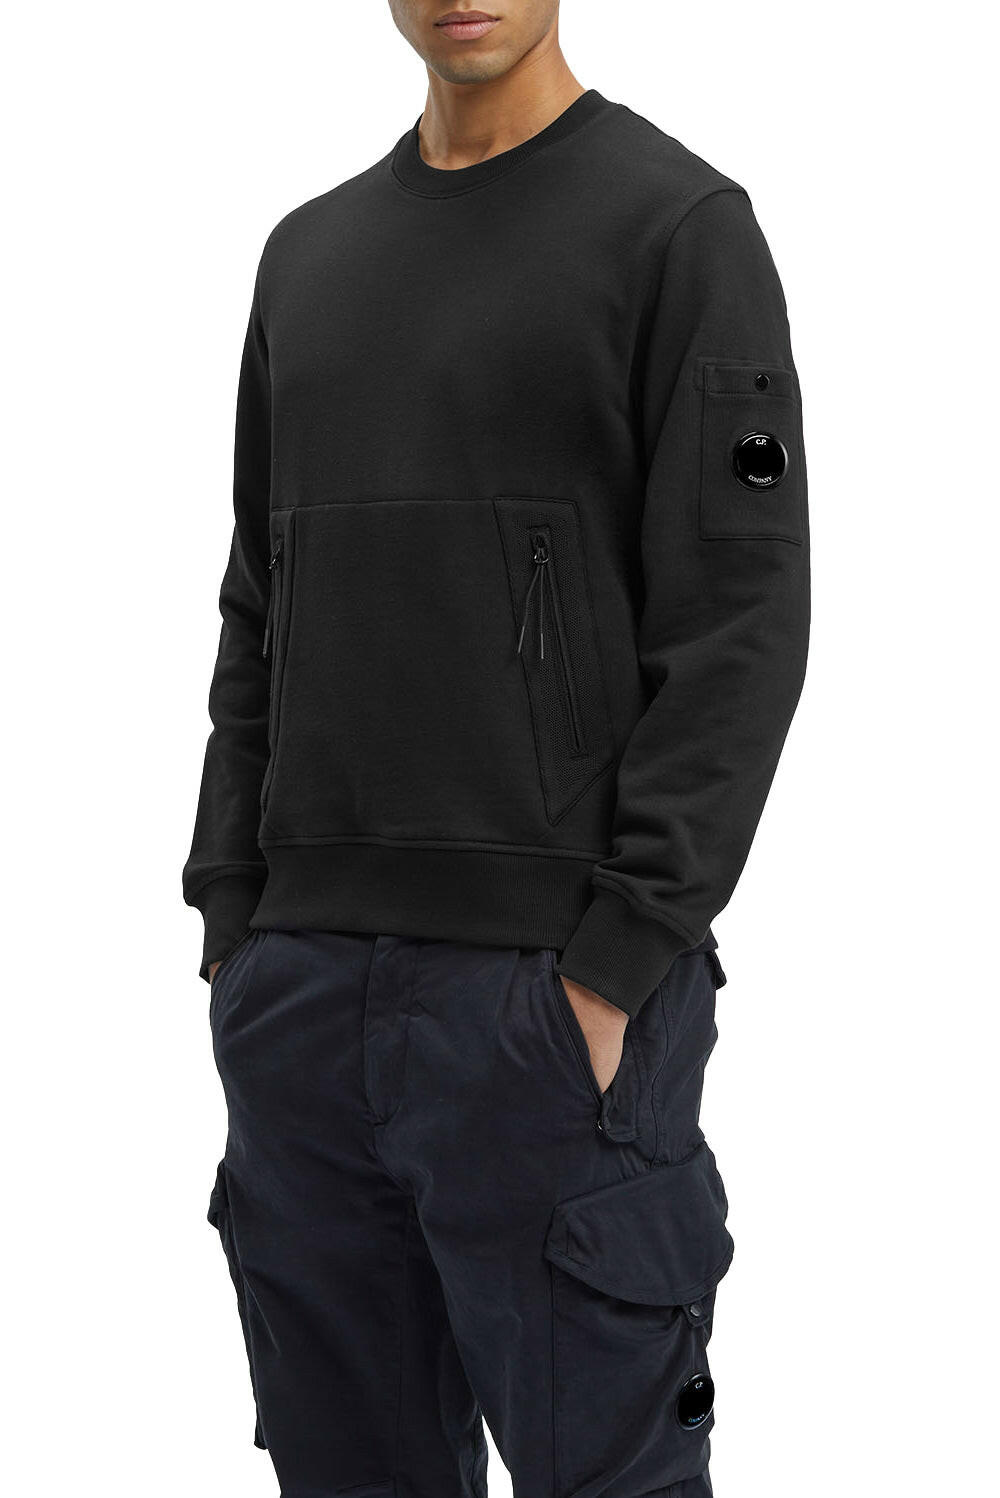  Cp Company Fleece Kangaroo Sweatshirt Black Uomo - 2